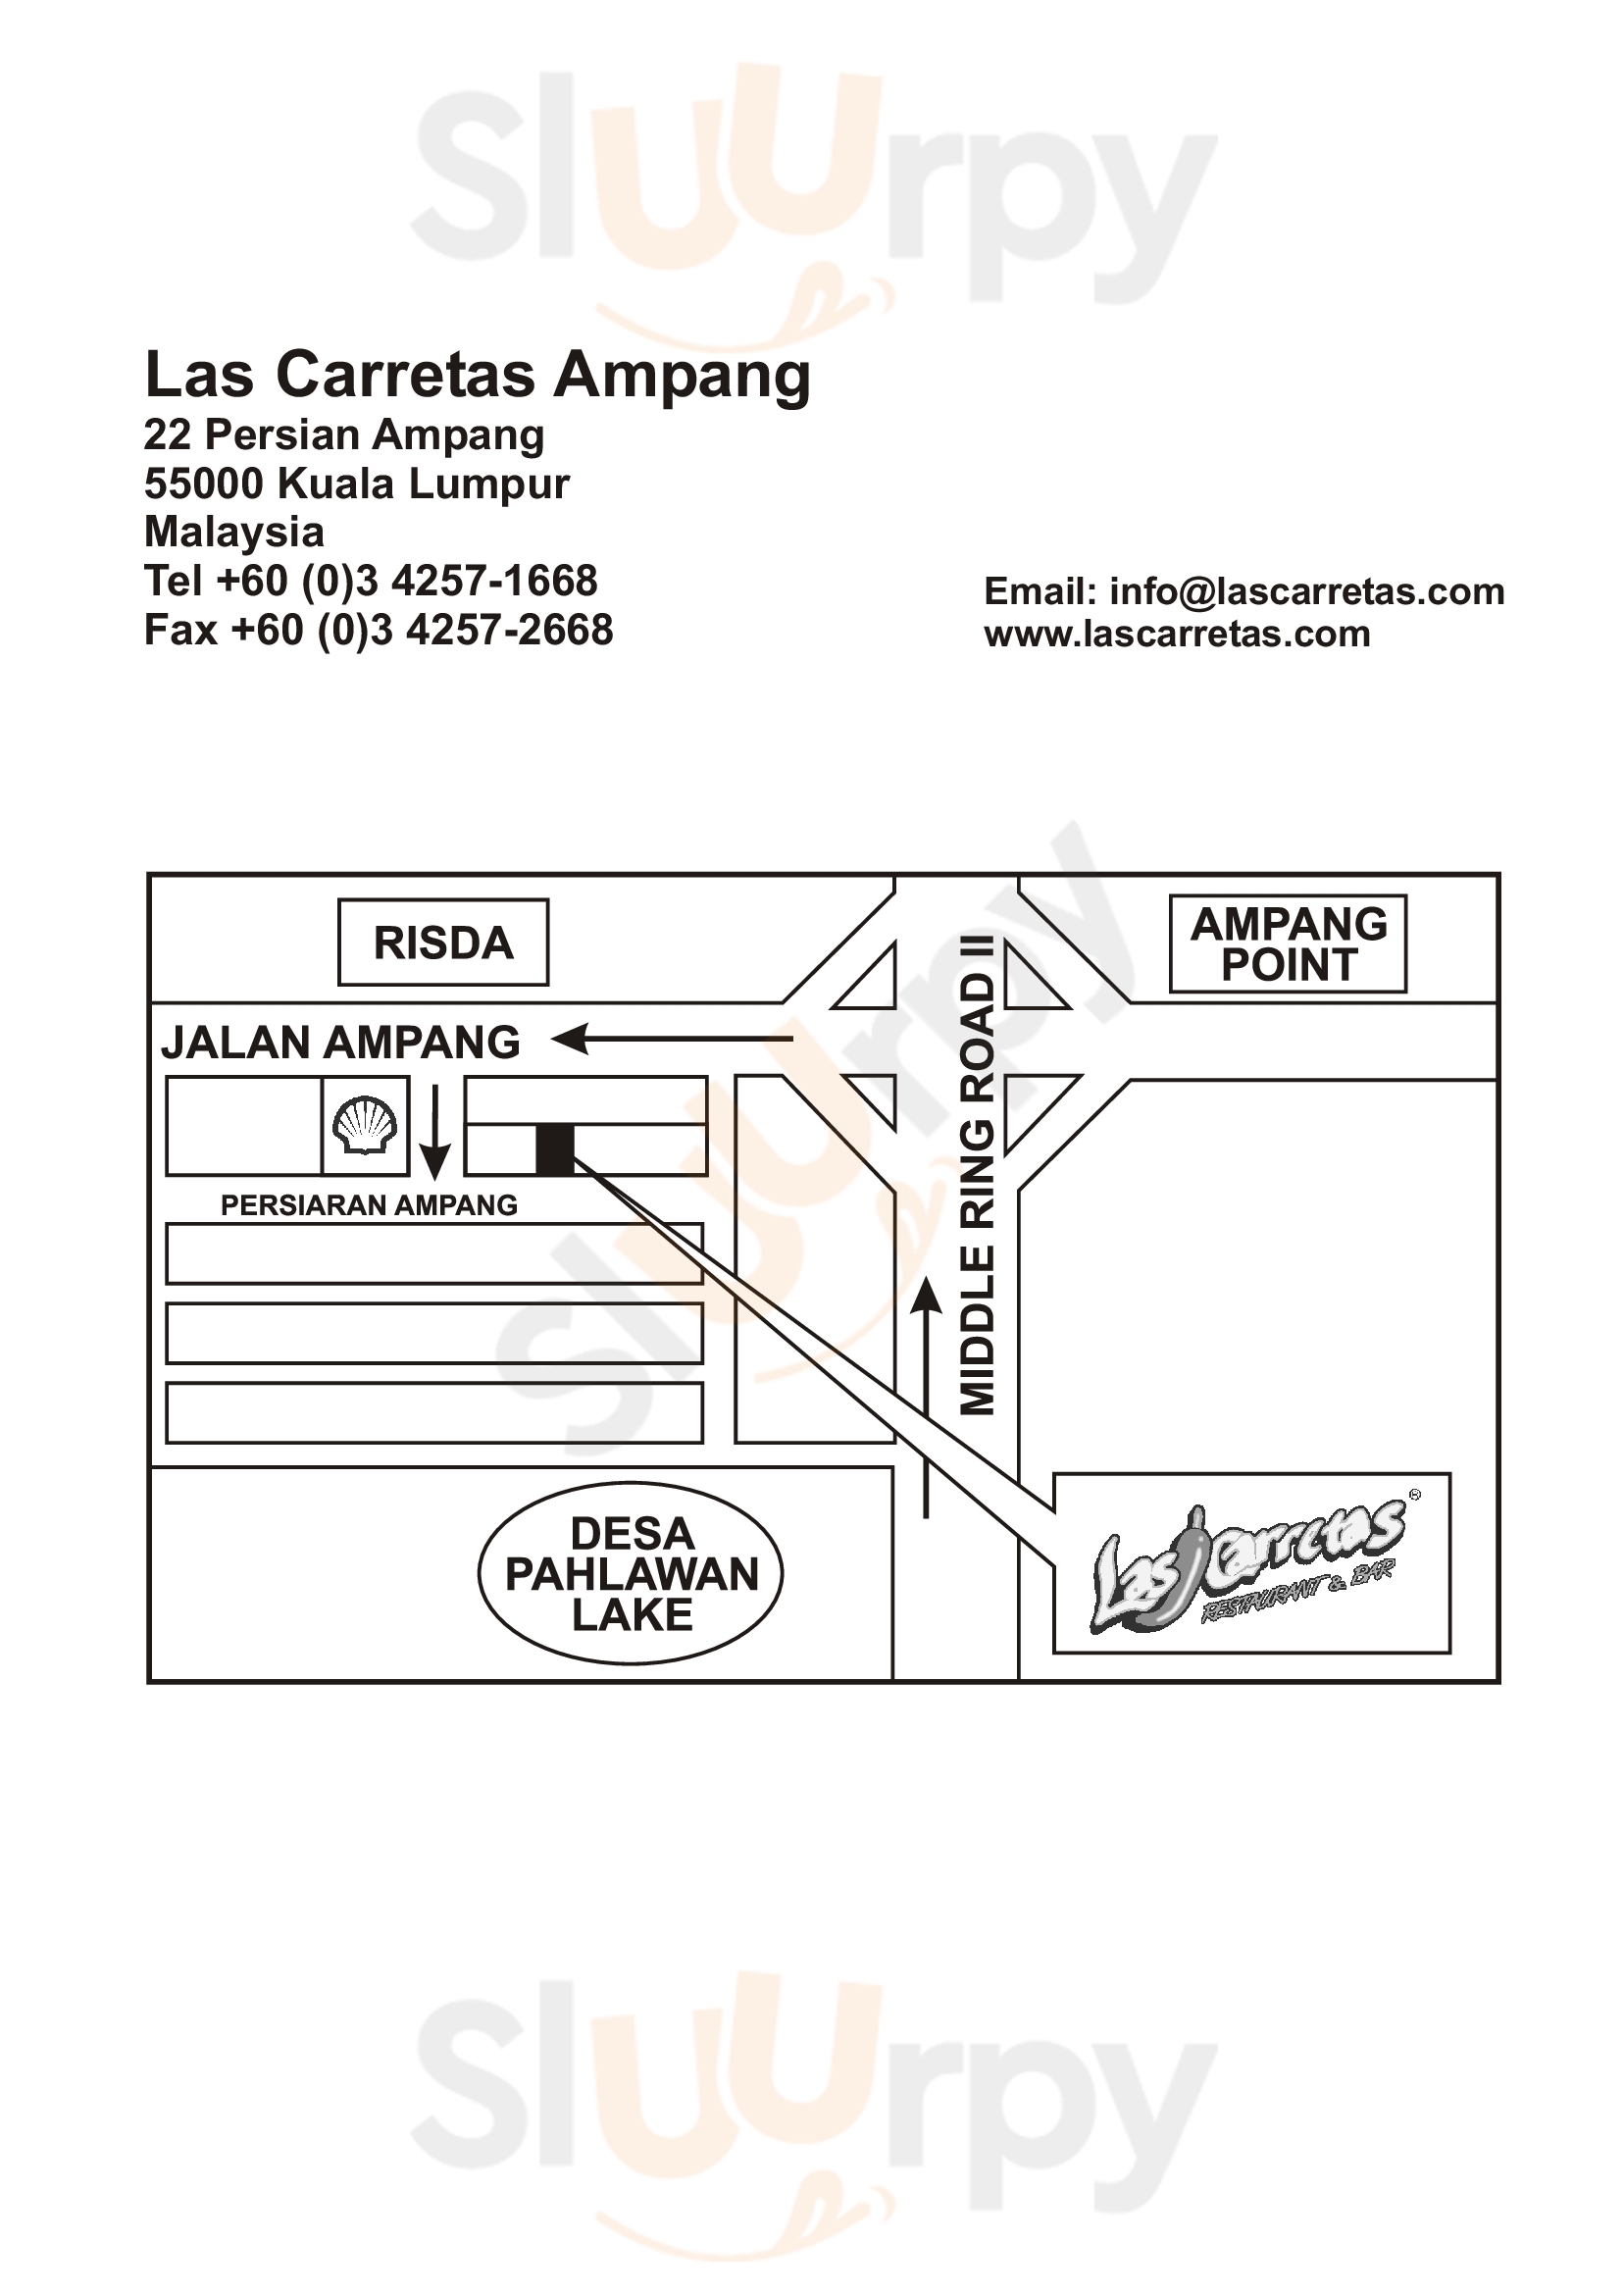 Las Carretas Restaurant & Bar Kuala Lumpur Menu - 1